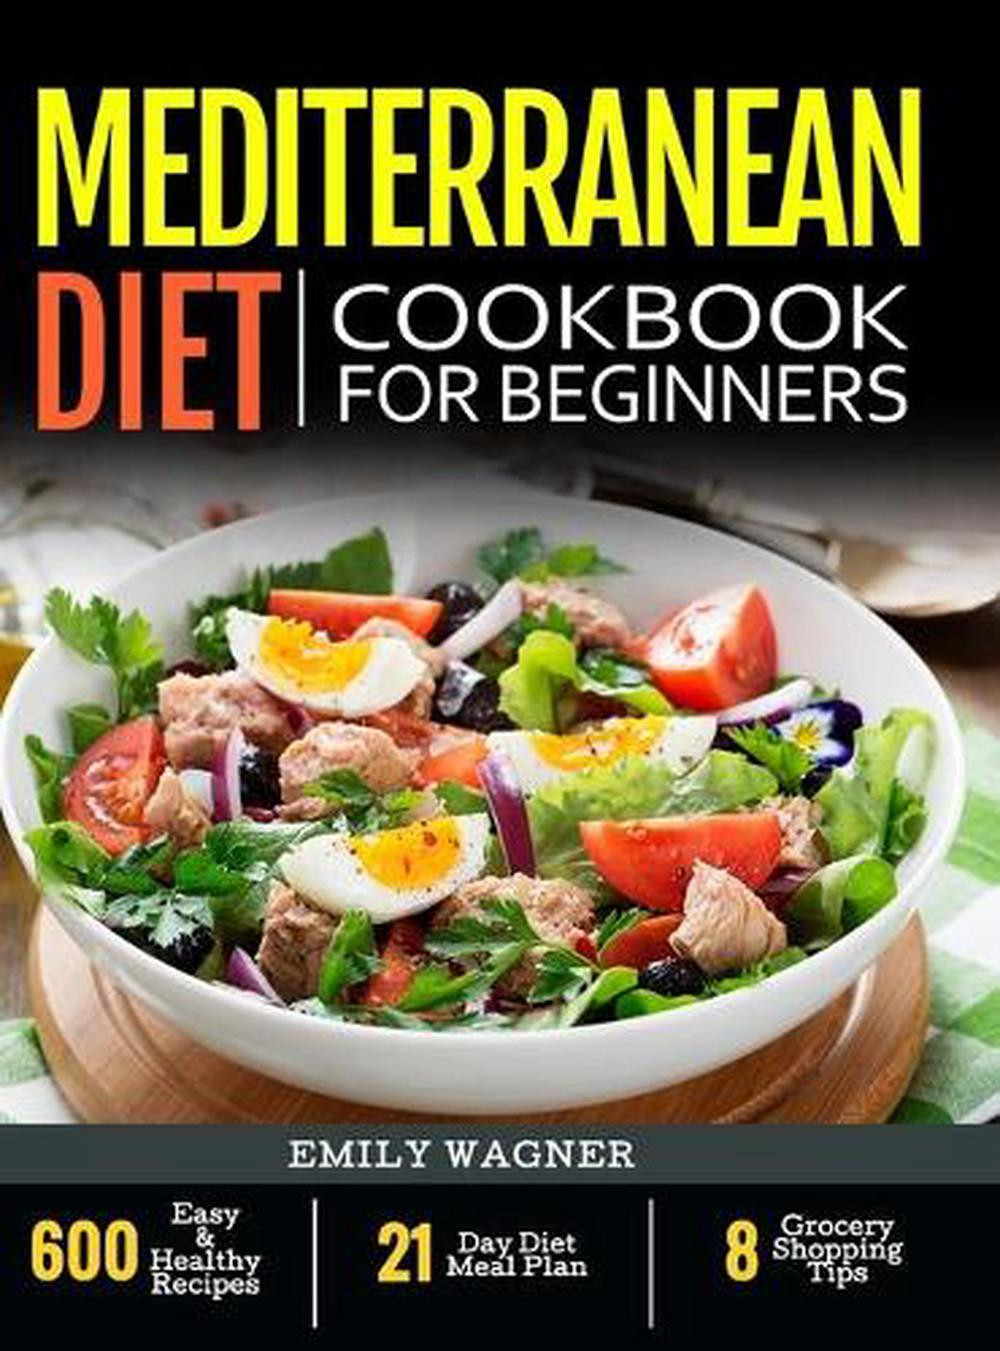 The Best 15 Mediterranean Diet Cookbooks